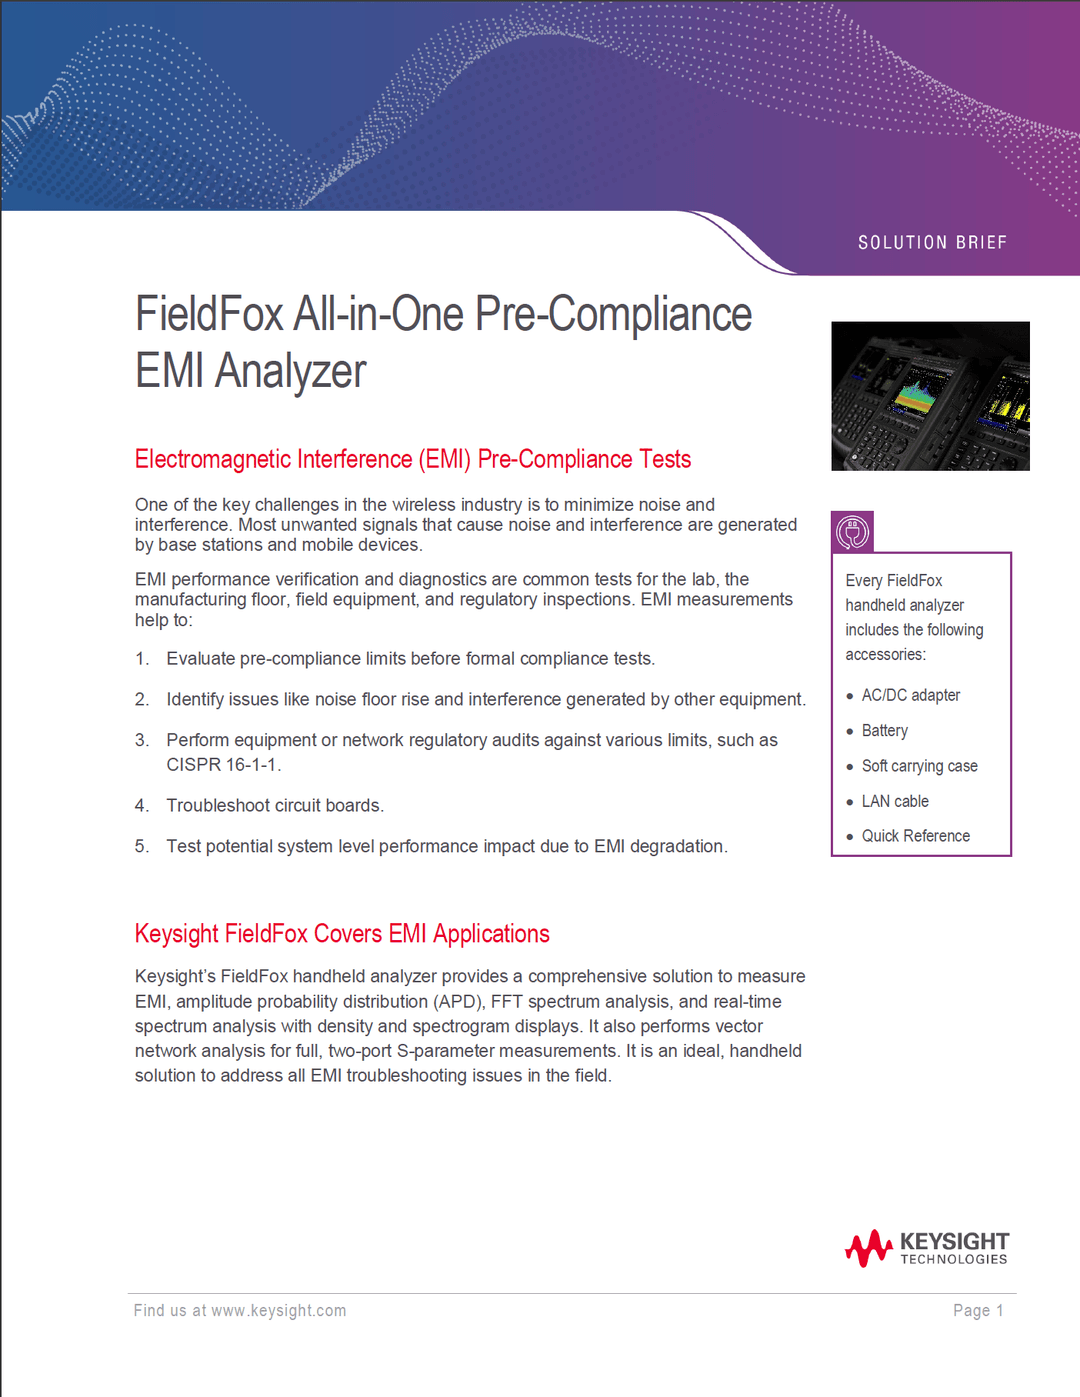 FieldFox All-in-One Pre-Compliance EMI Analyzer, image